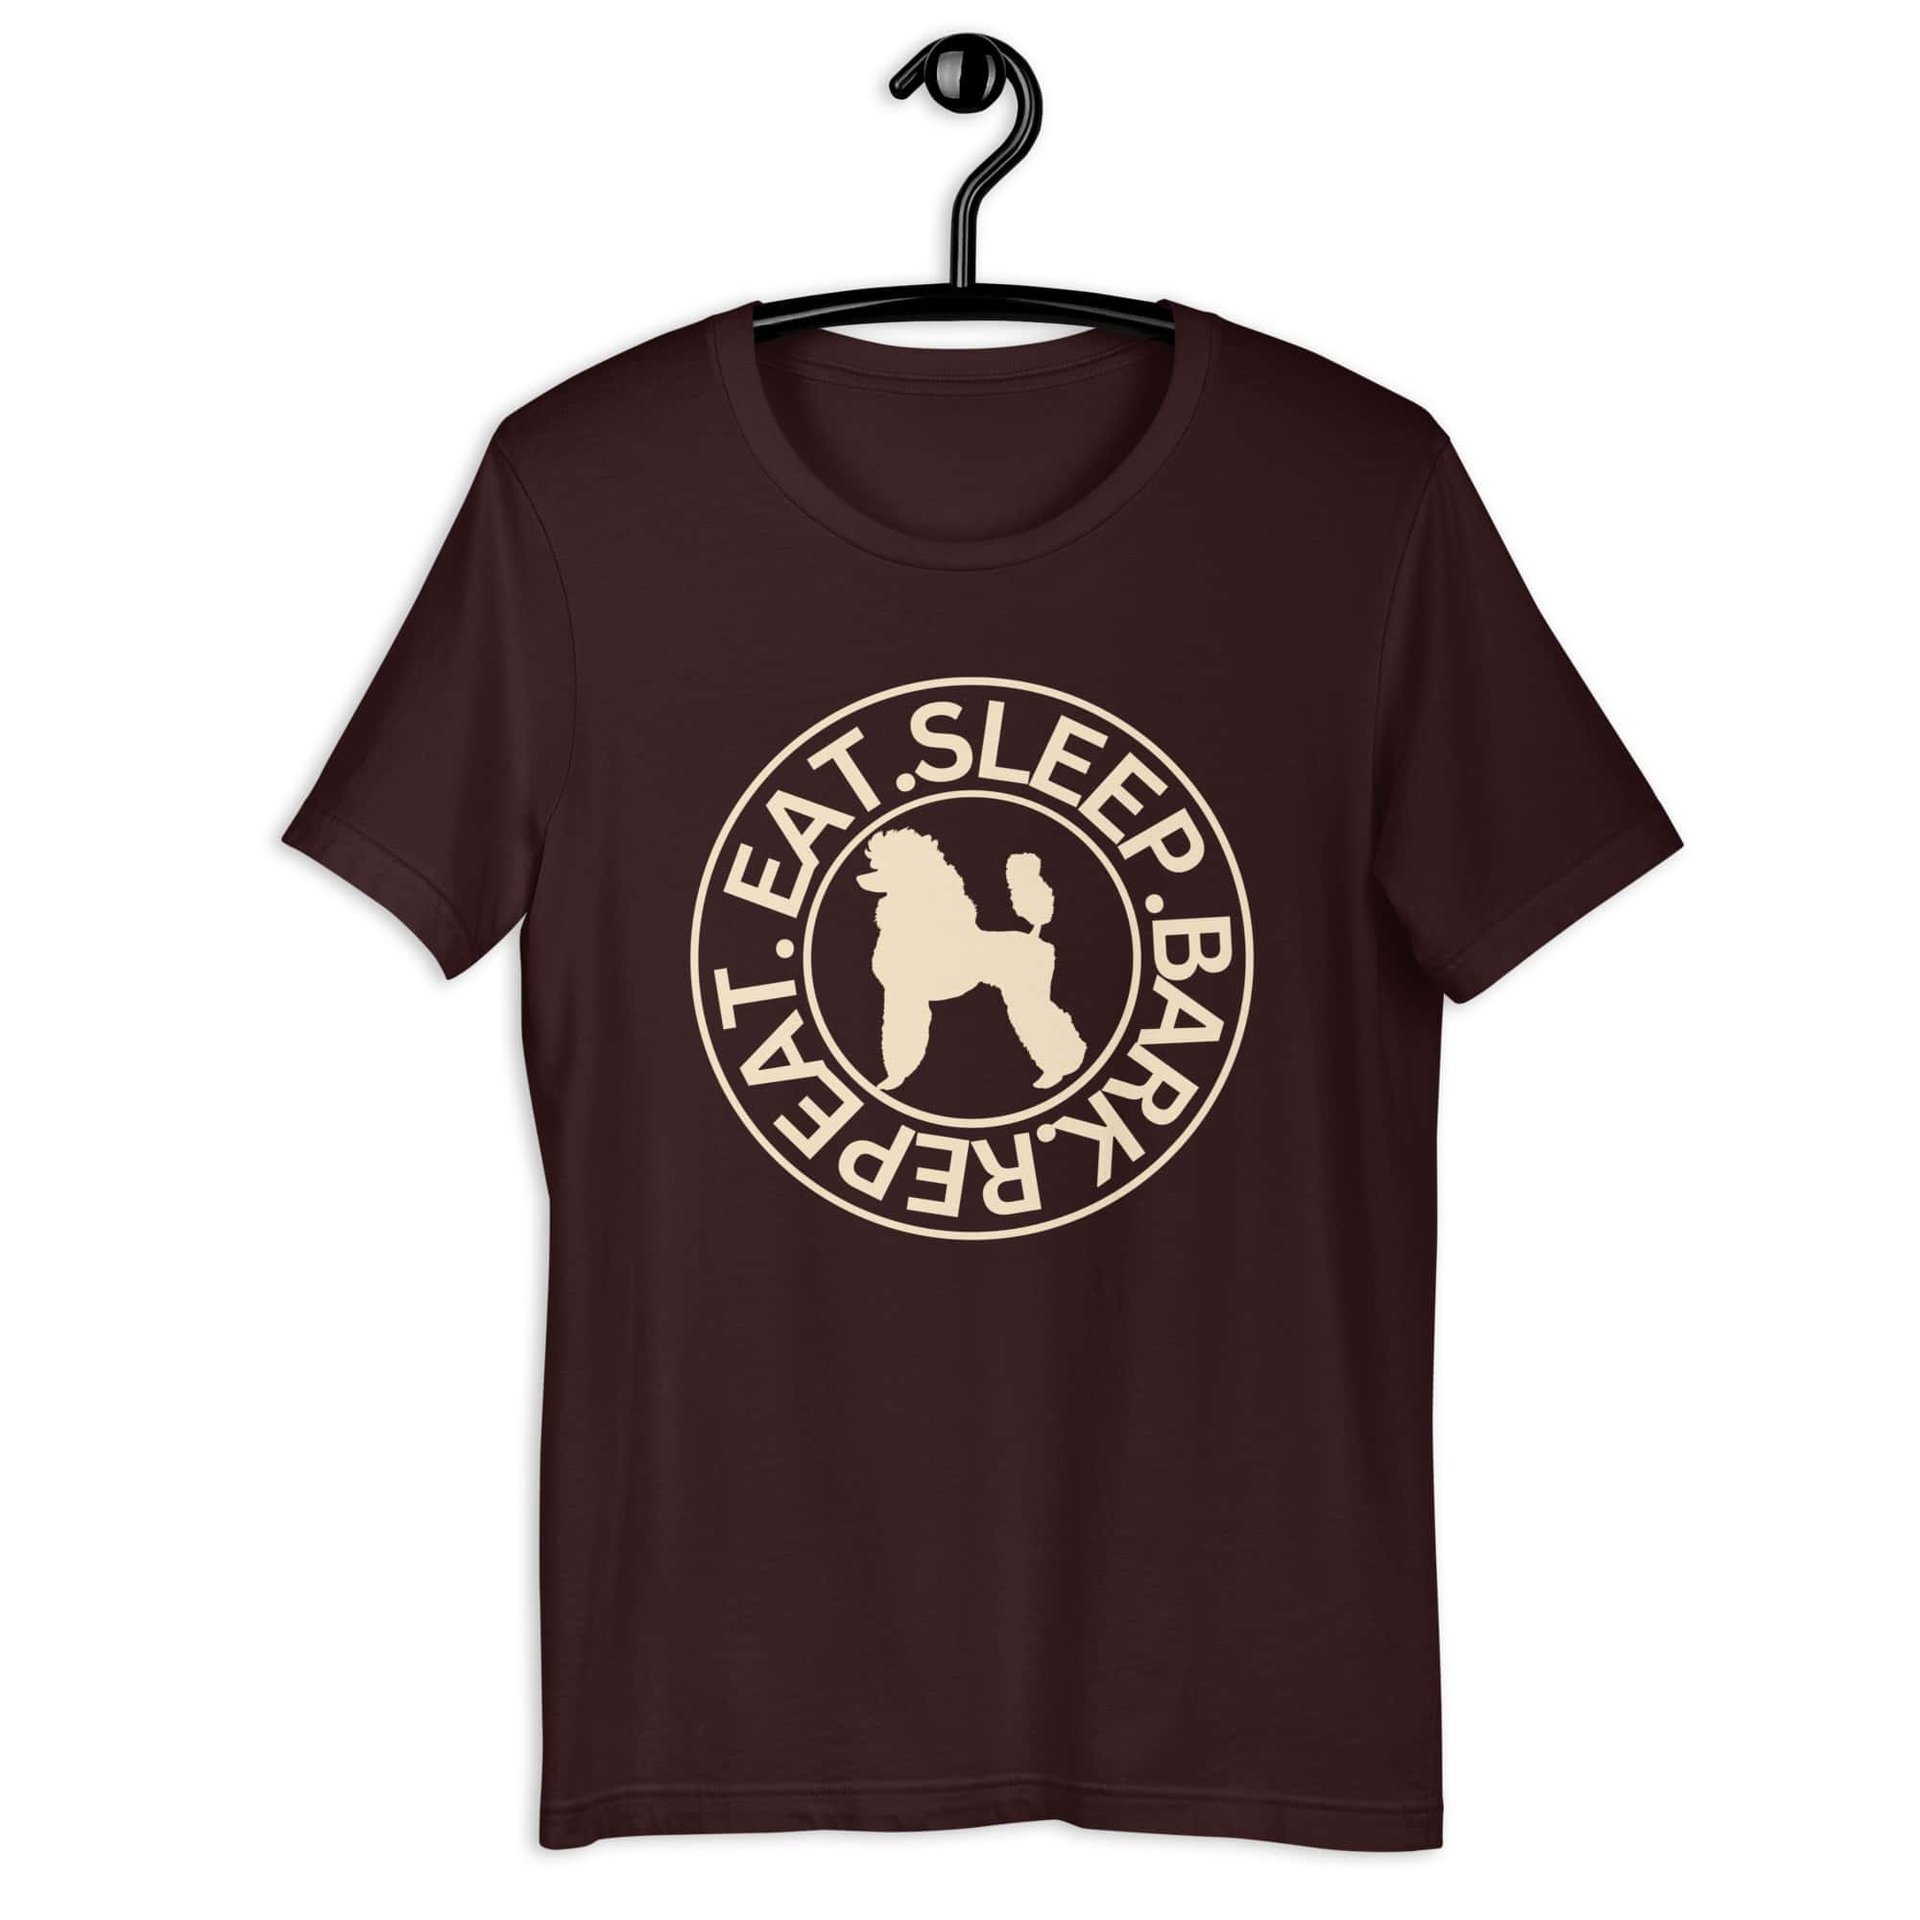 Eat Sleep Repeat Bark Miniature Poodle Unisex T-Shirt. Oxblood